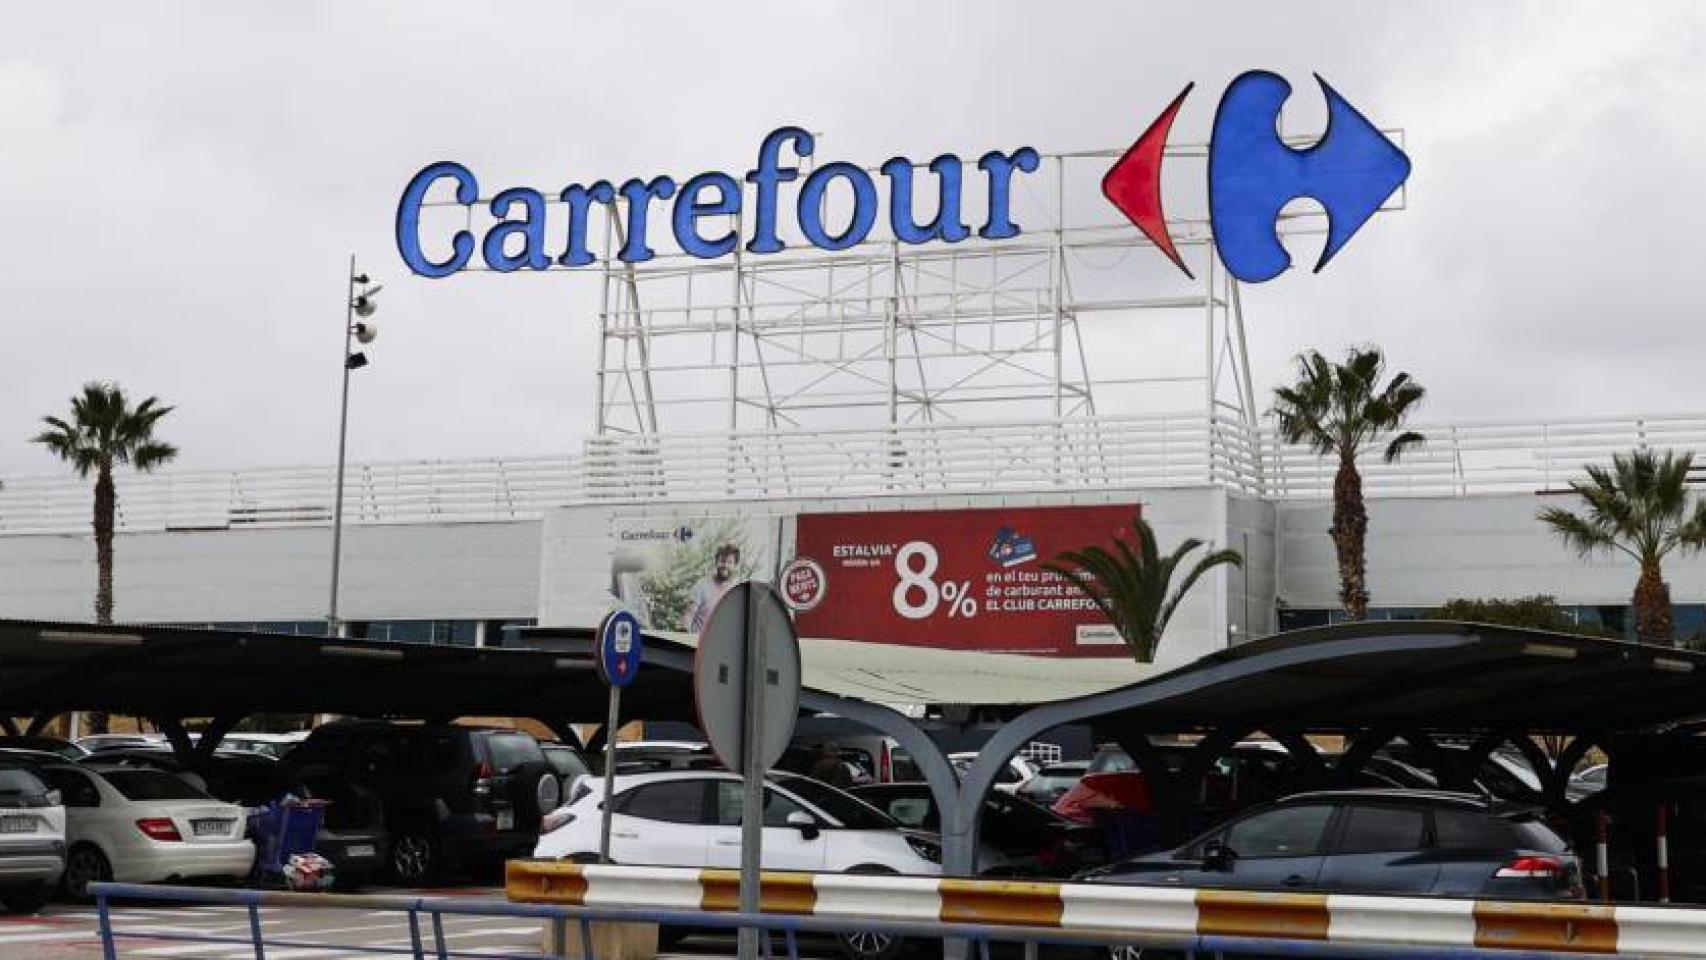 Las revolucionarias botas de de Carrefour que se mojan: los pies calientes por 14,99 euros